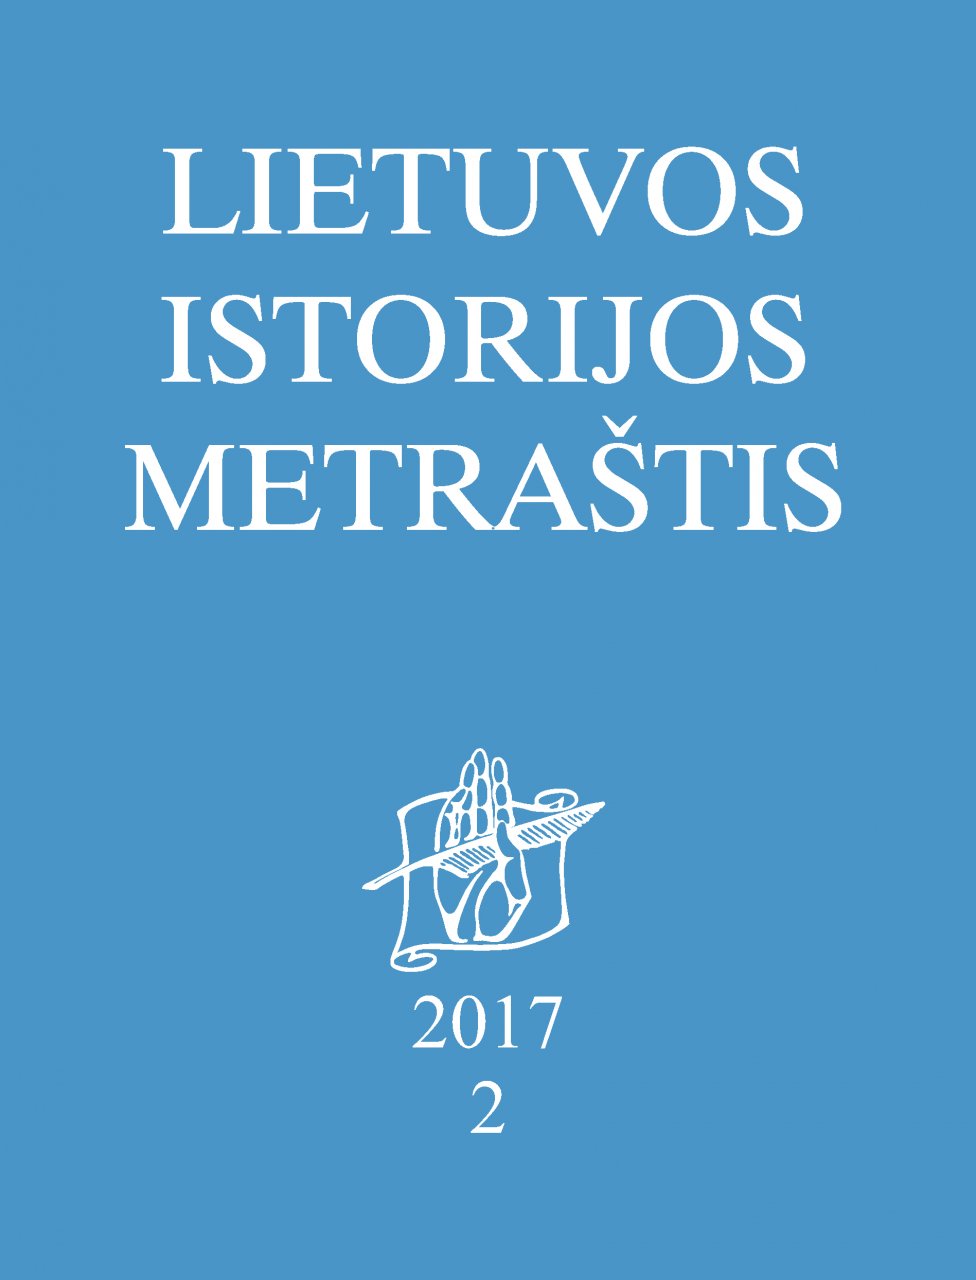 Lietuvos istorijos metraštis 2017 metai 2 